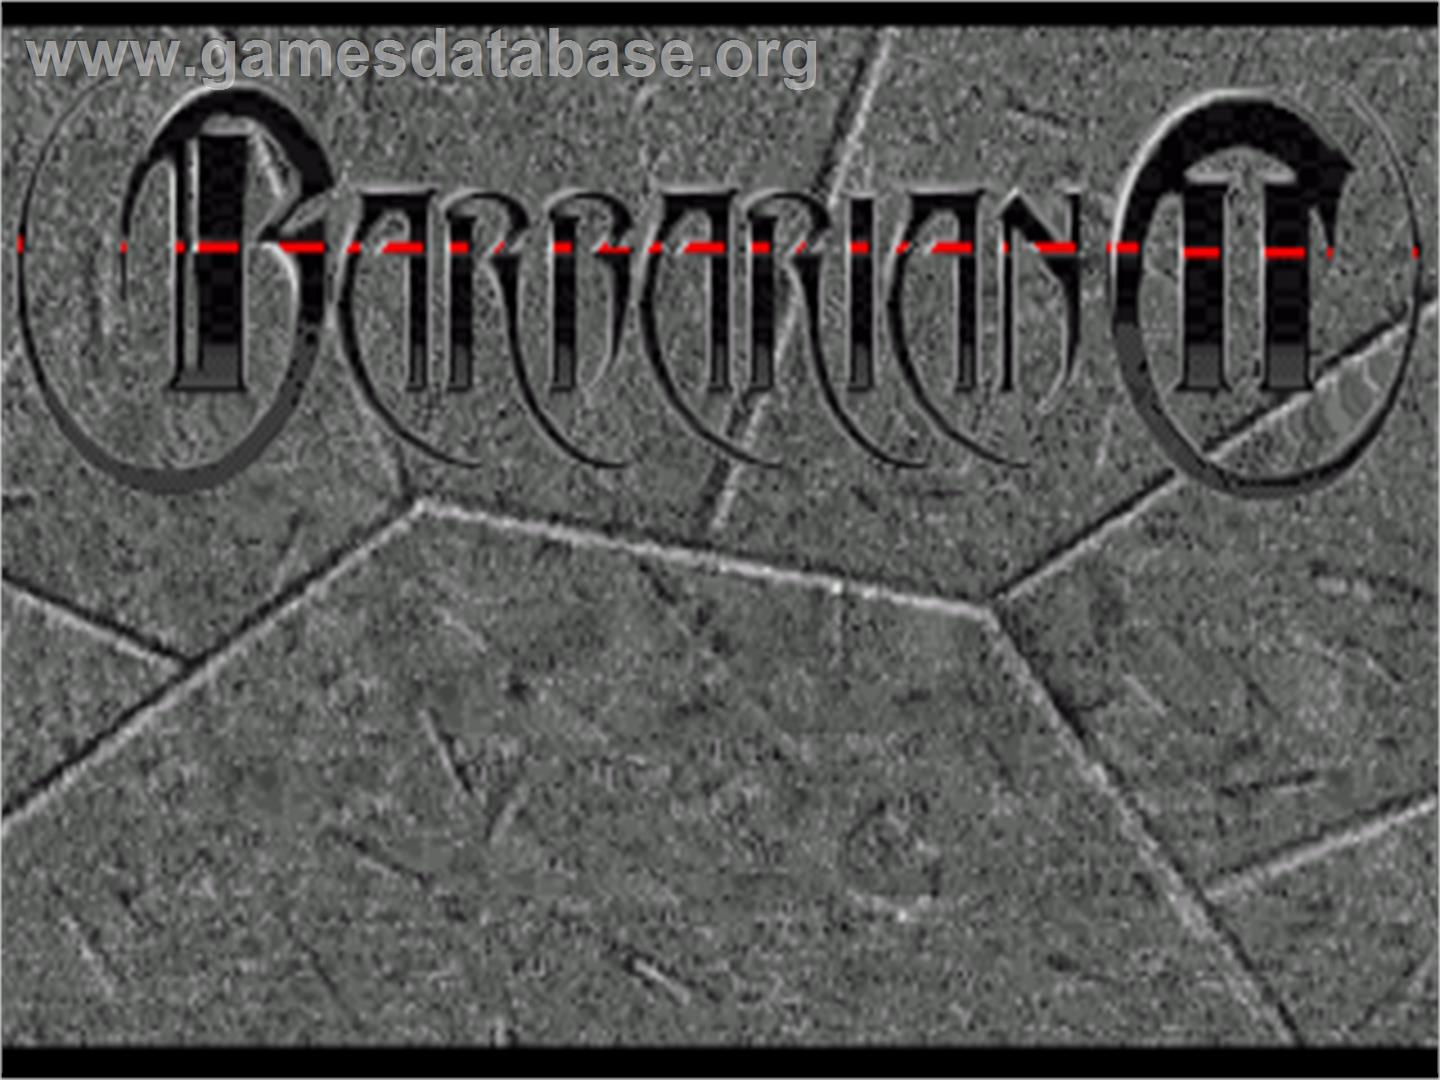 Barbarian 2 - Commodore Amiga - Artwork - Title Screen